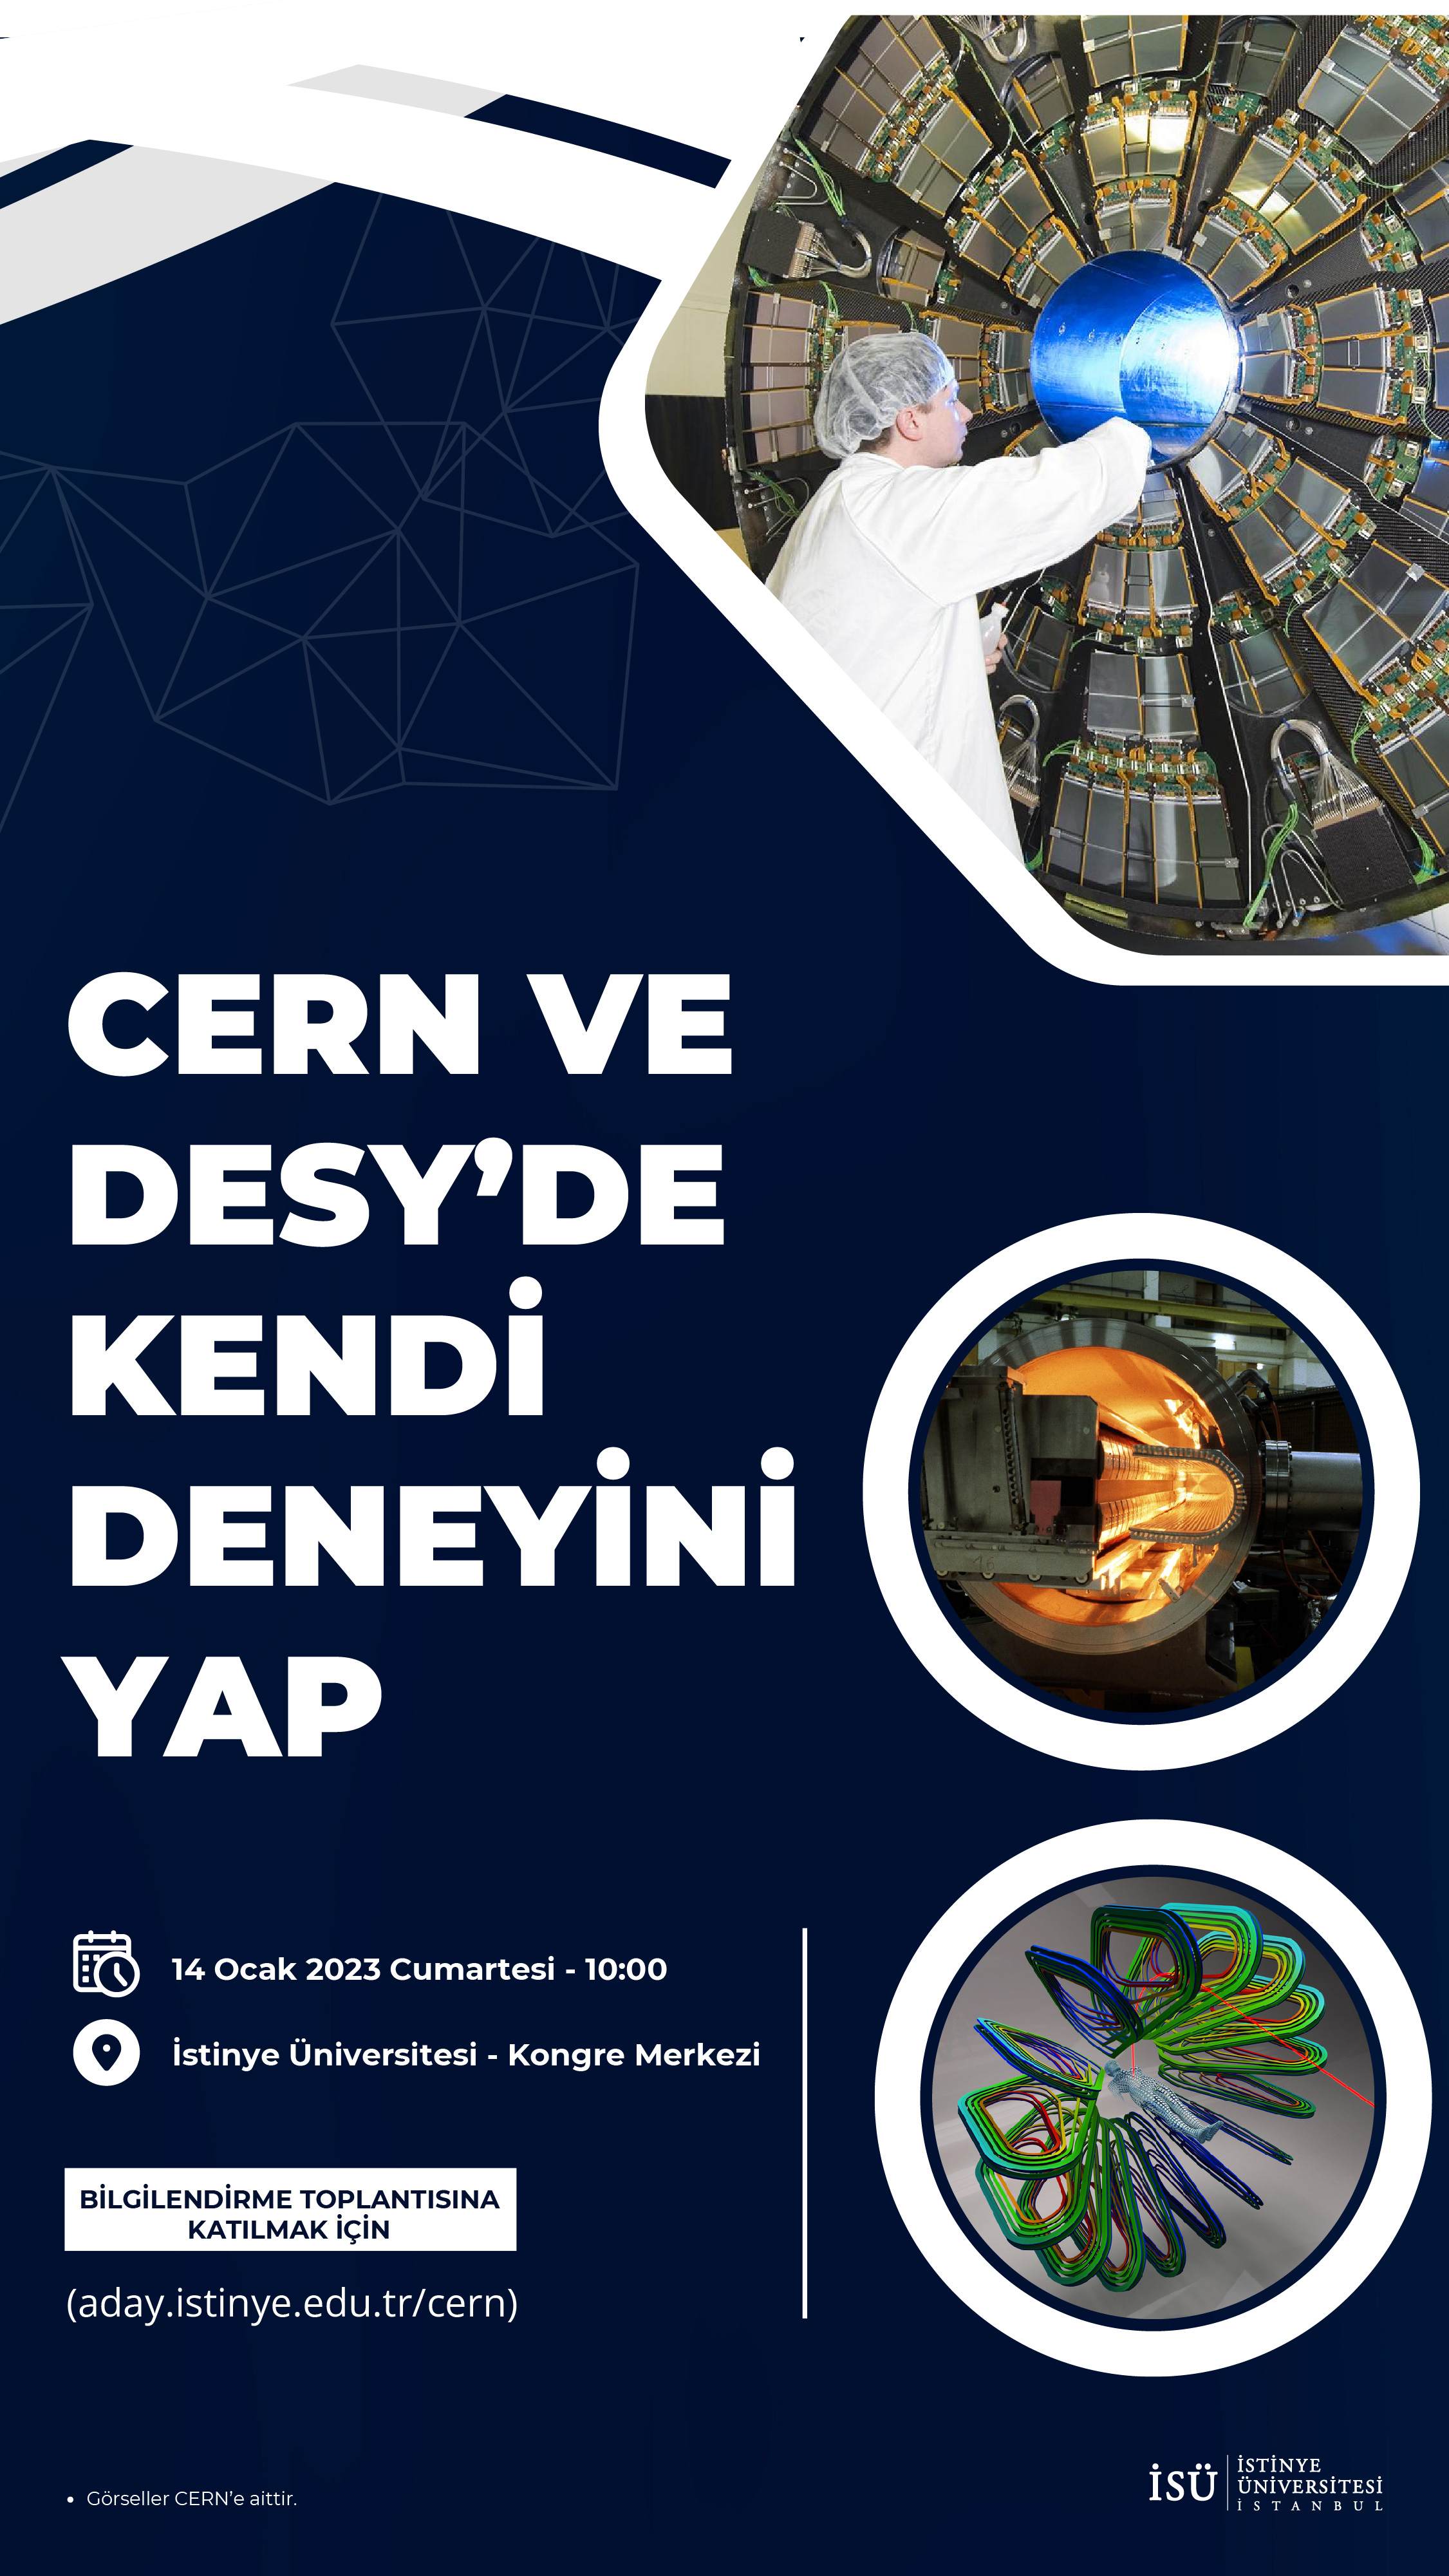 CERN ve DESY'DE Kendi Deneyini Yap